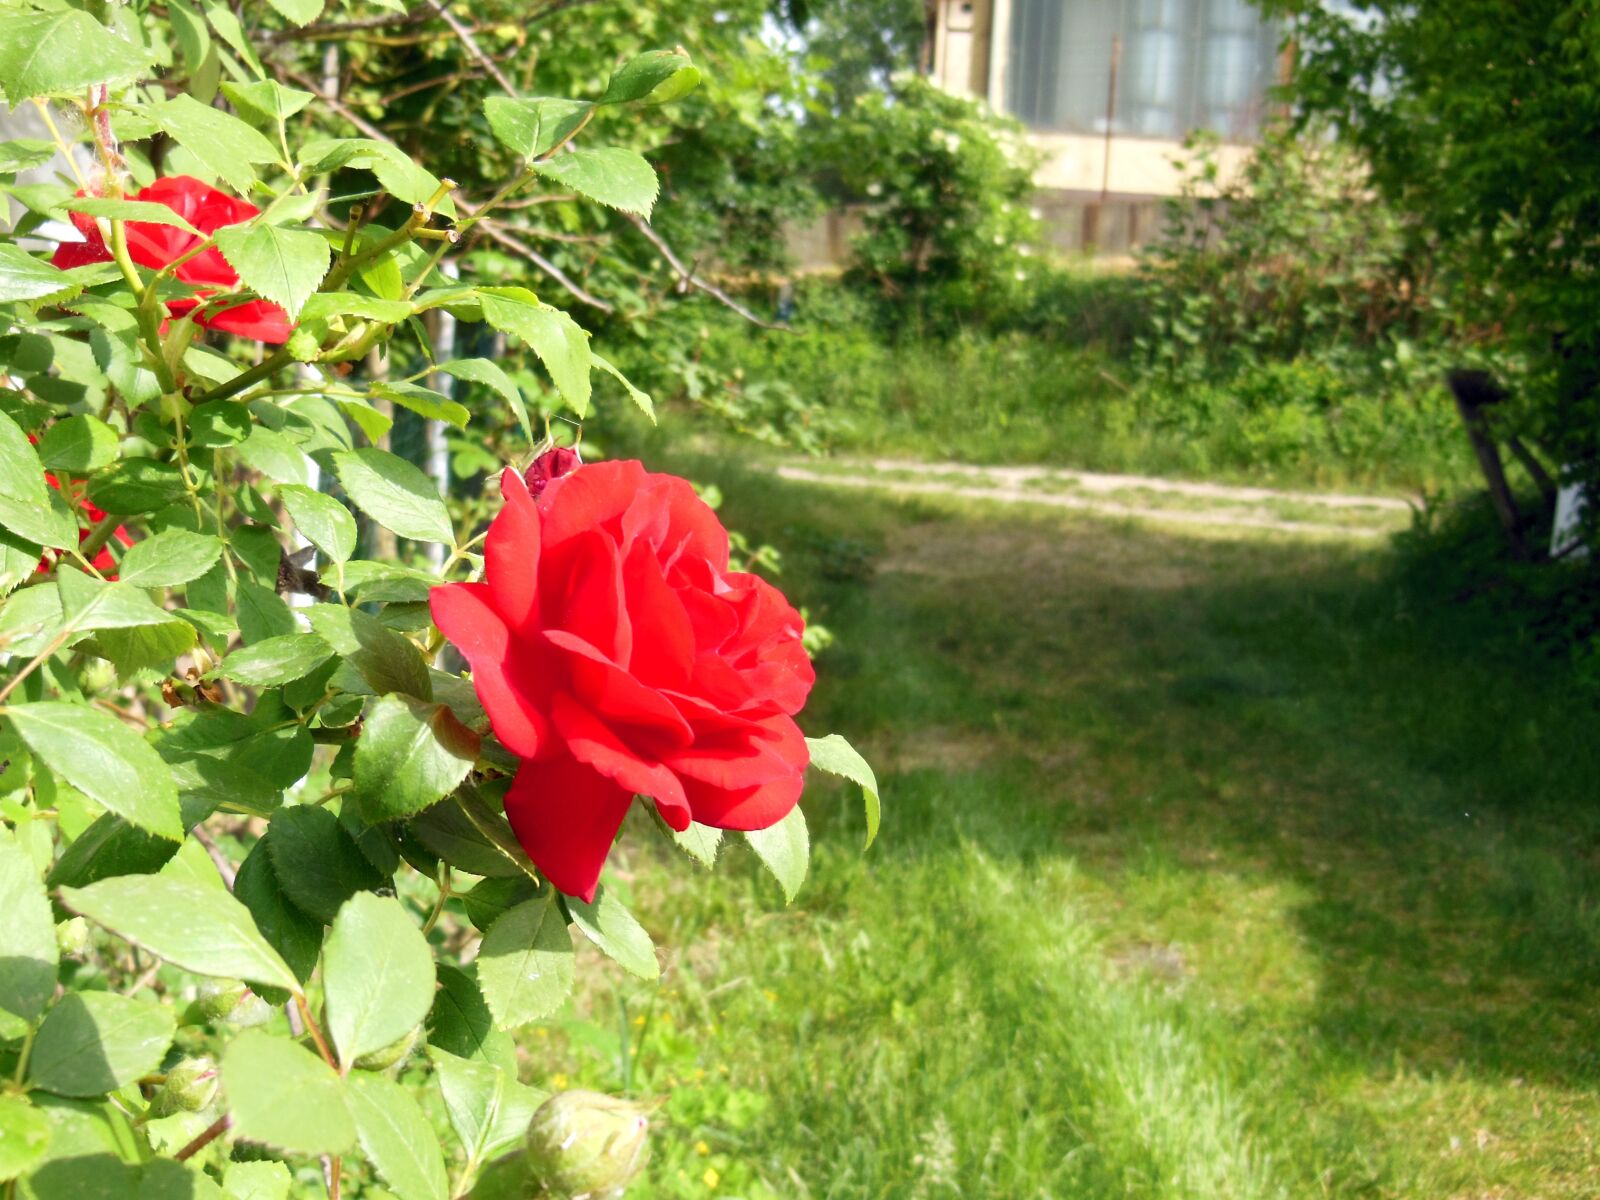 Nikon Coolpix S9300 sample photo. Hungary, garden, rose photography